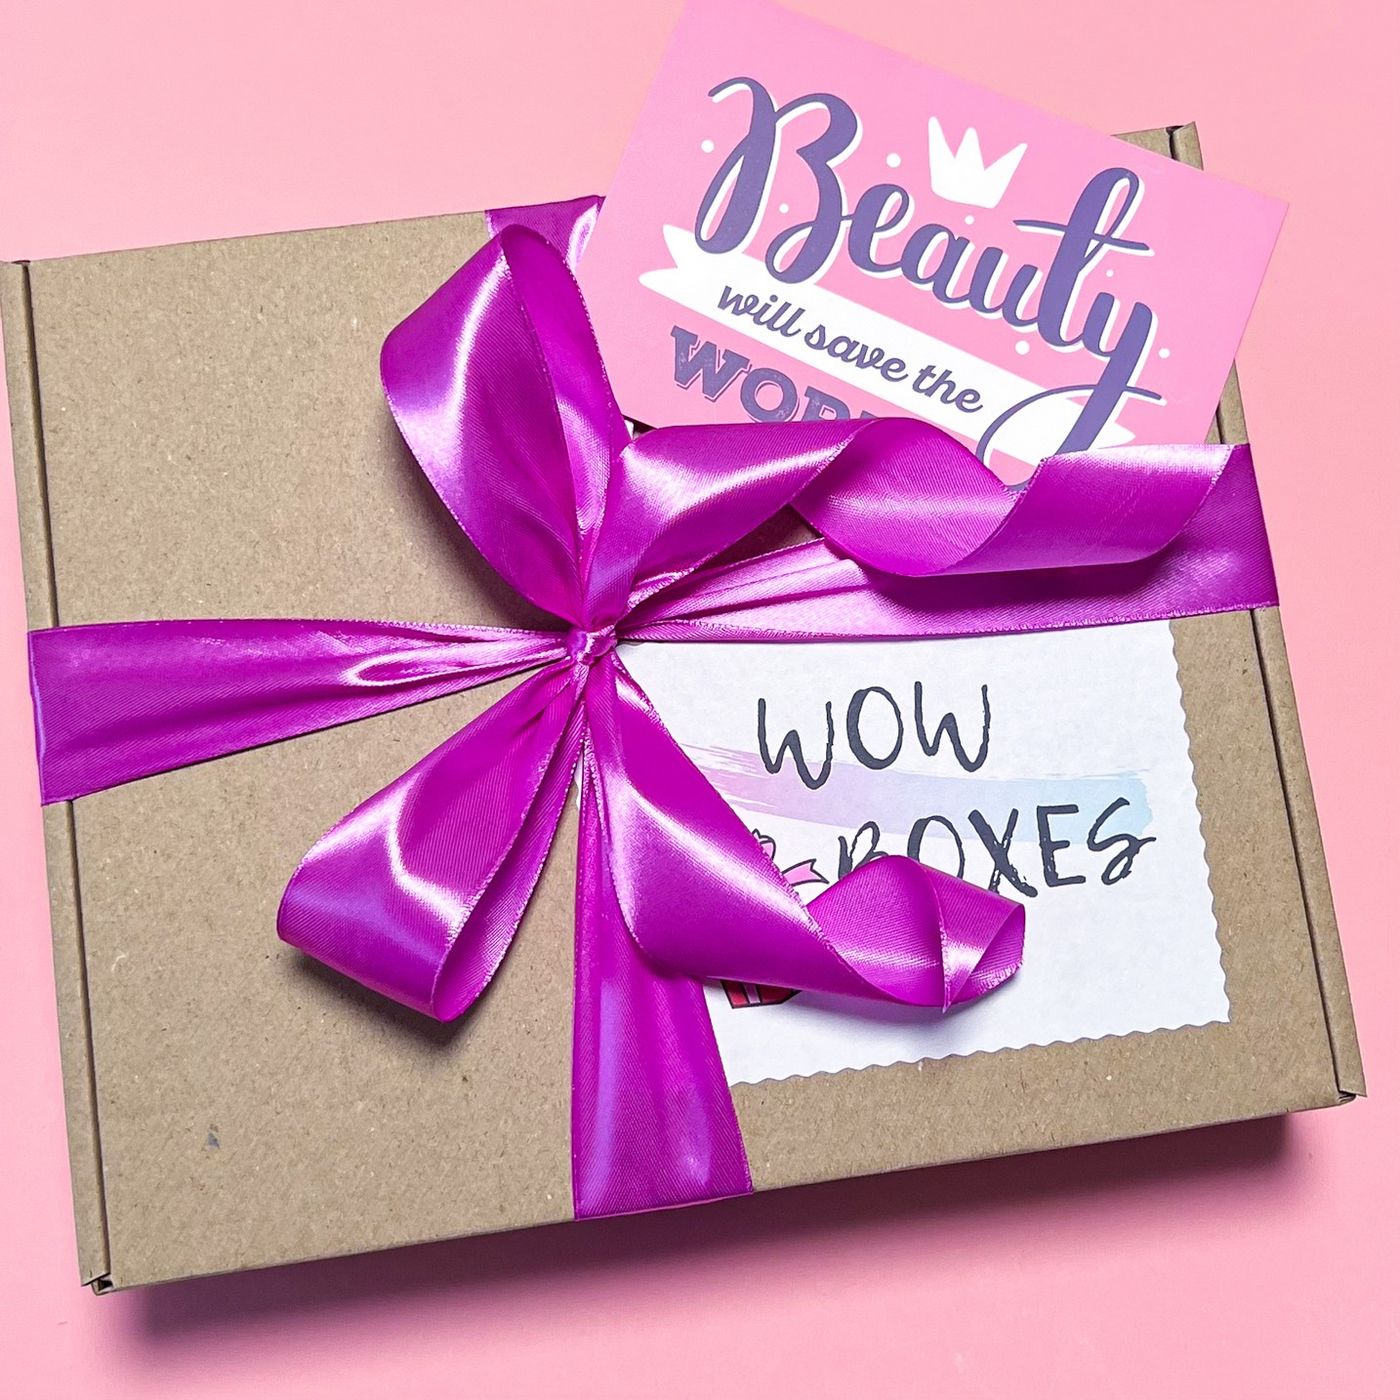 Подарунковий бокс для дівчини Wow boxes "Б'юті бокс / Beauty box" №12